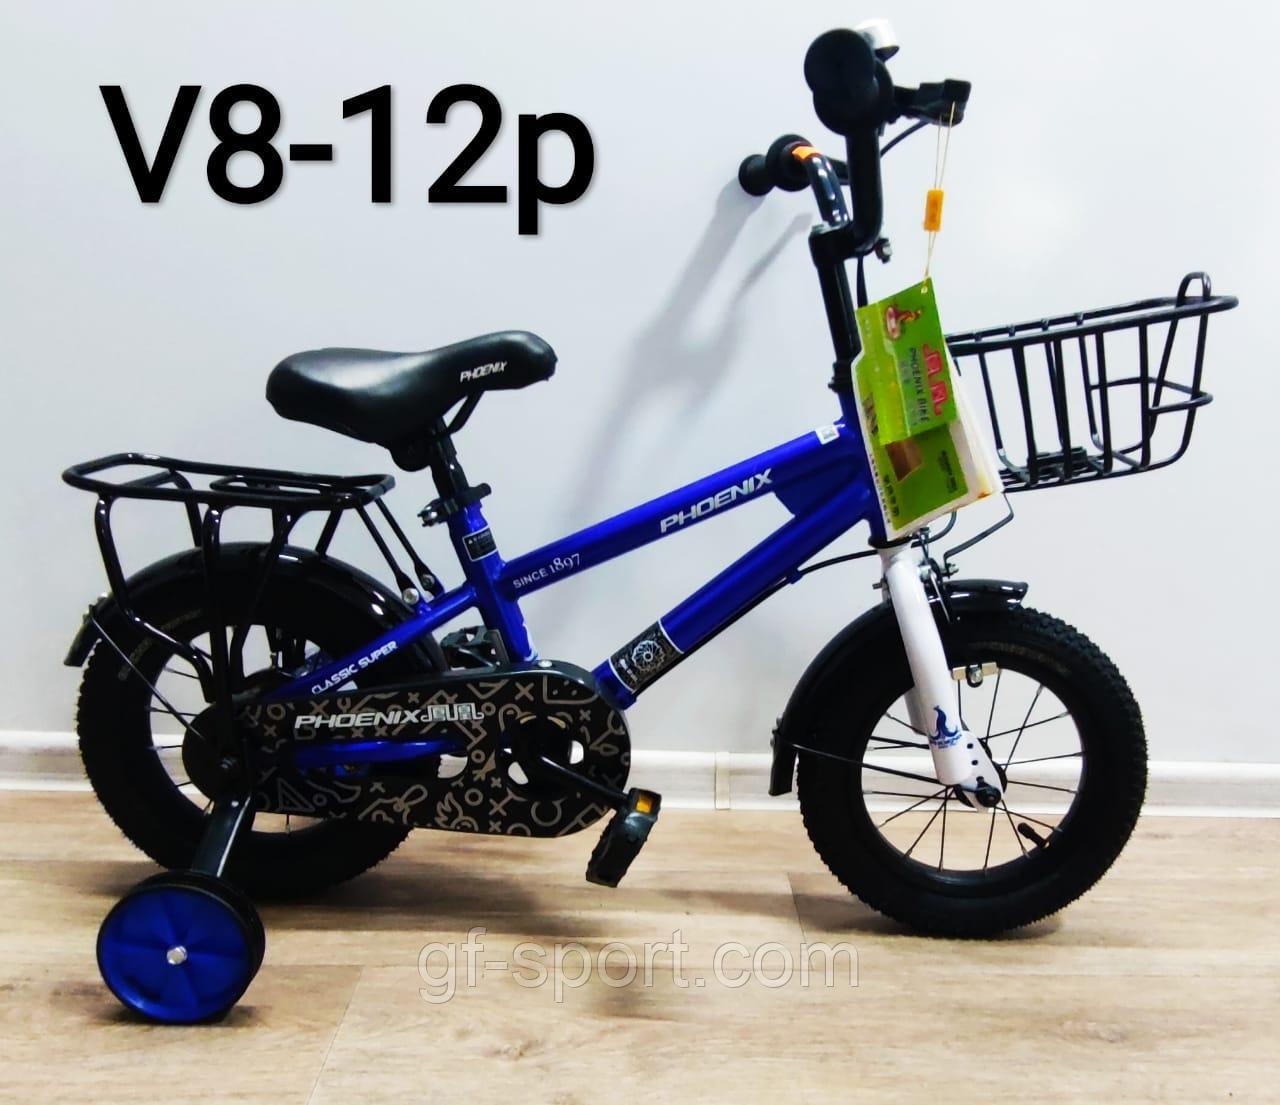 Велосипед Phoenix синий оригинал детский с холостым ходом 12 размер